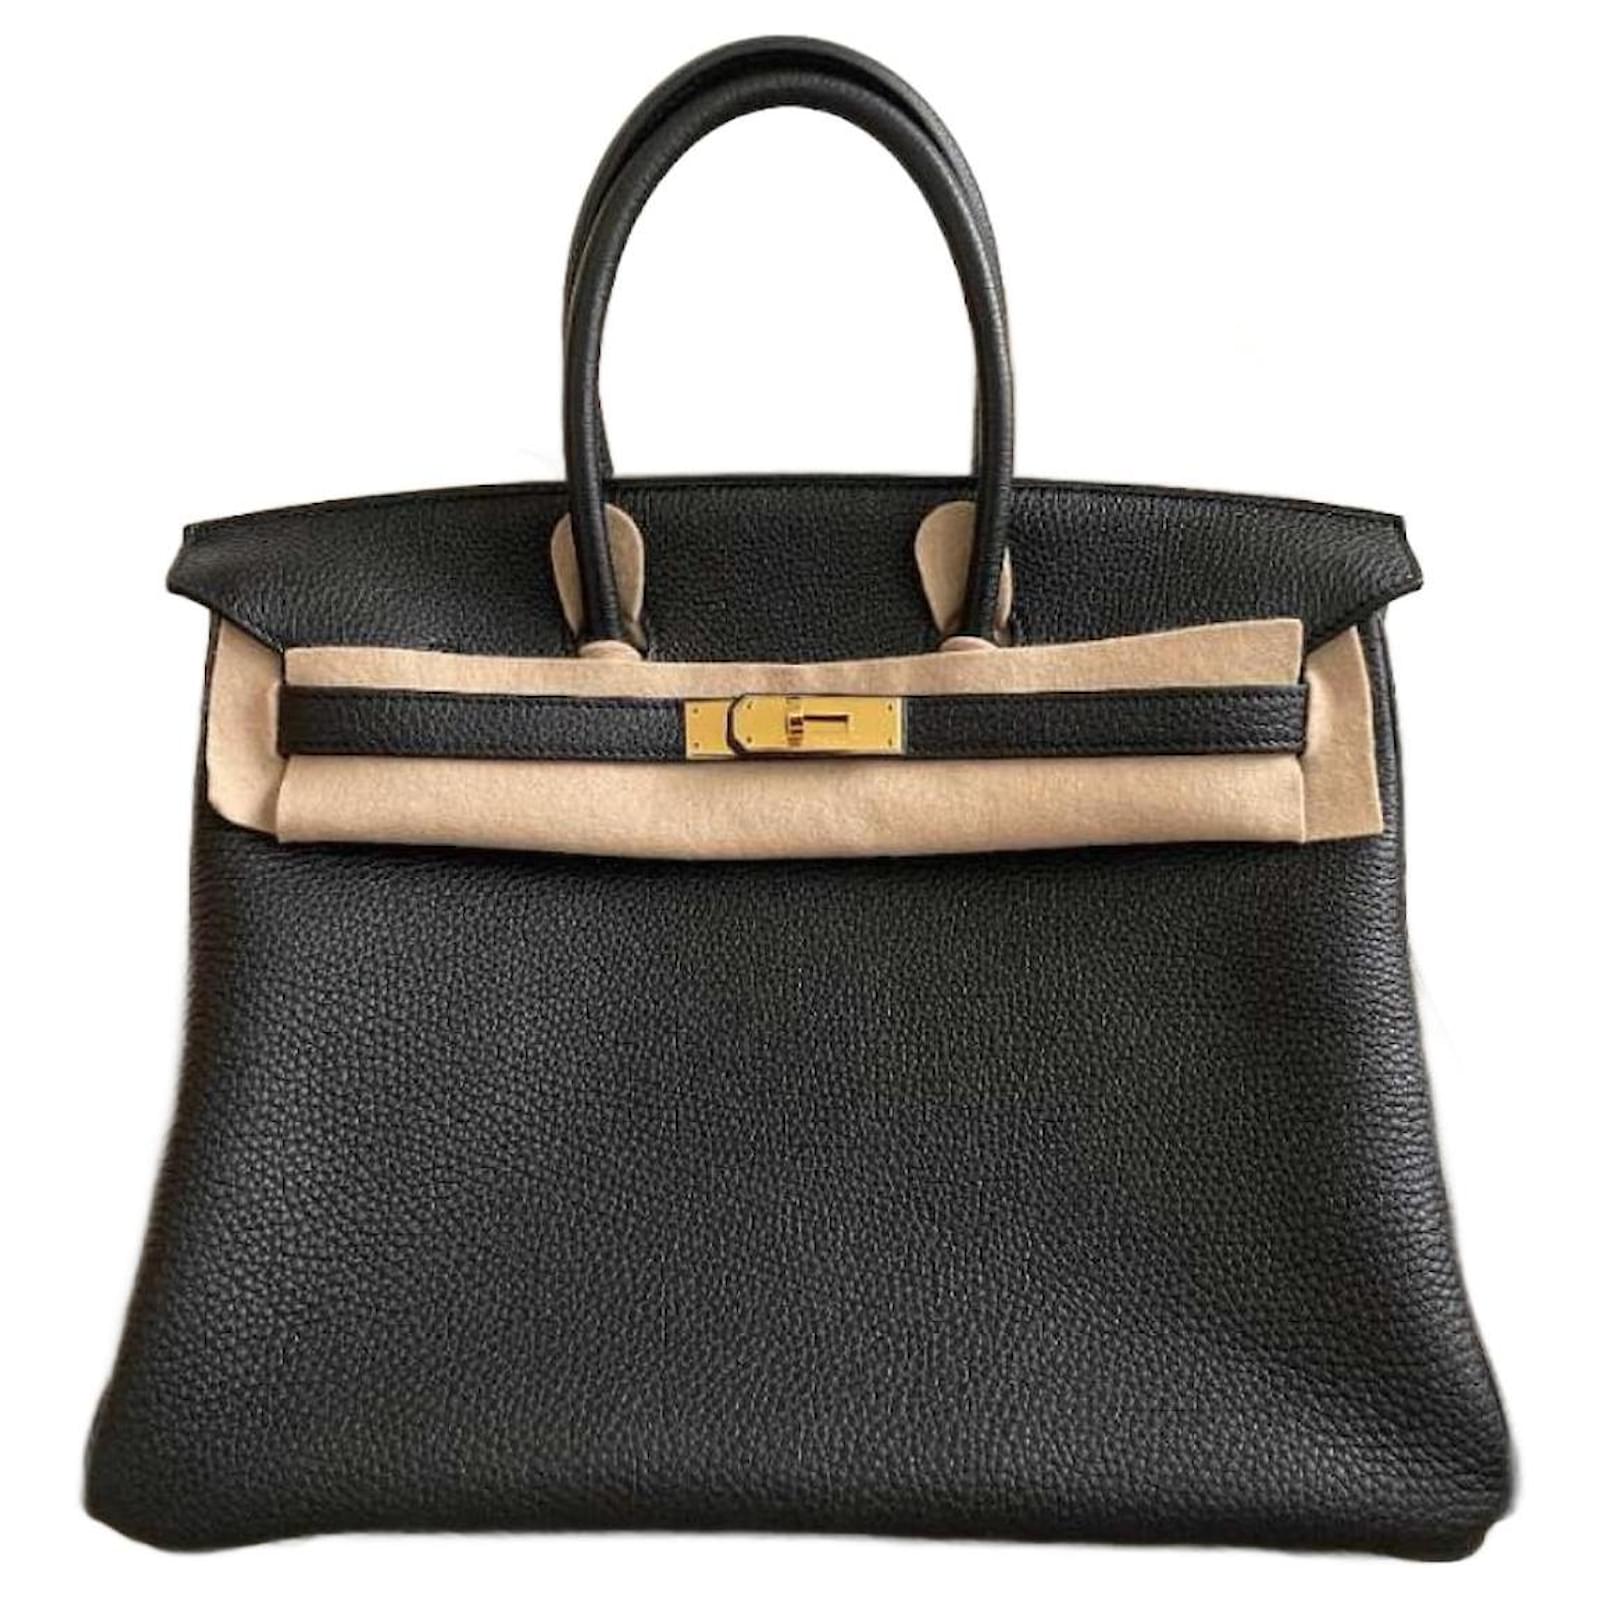 Hermes Birkin 35 Black Togo Leather With Gold Hardware Handbag